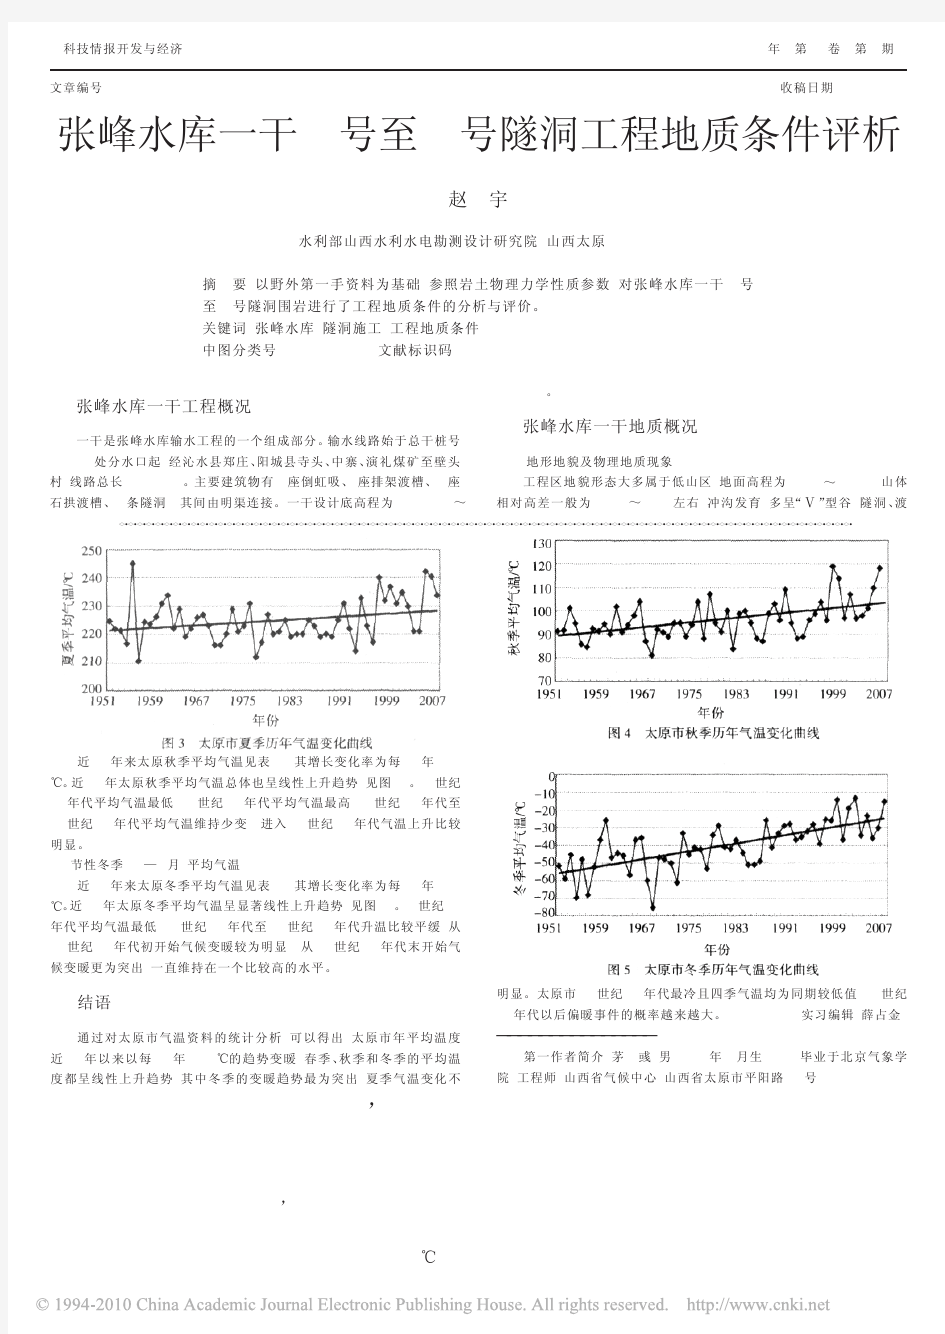 太原市近56年气温变化分析